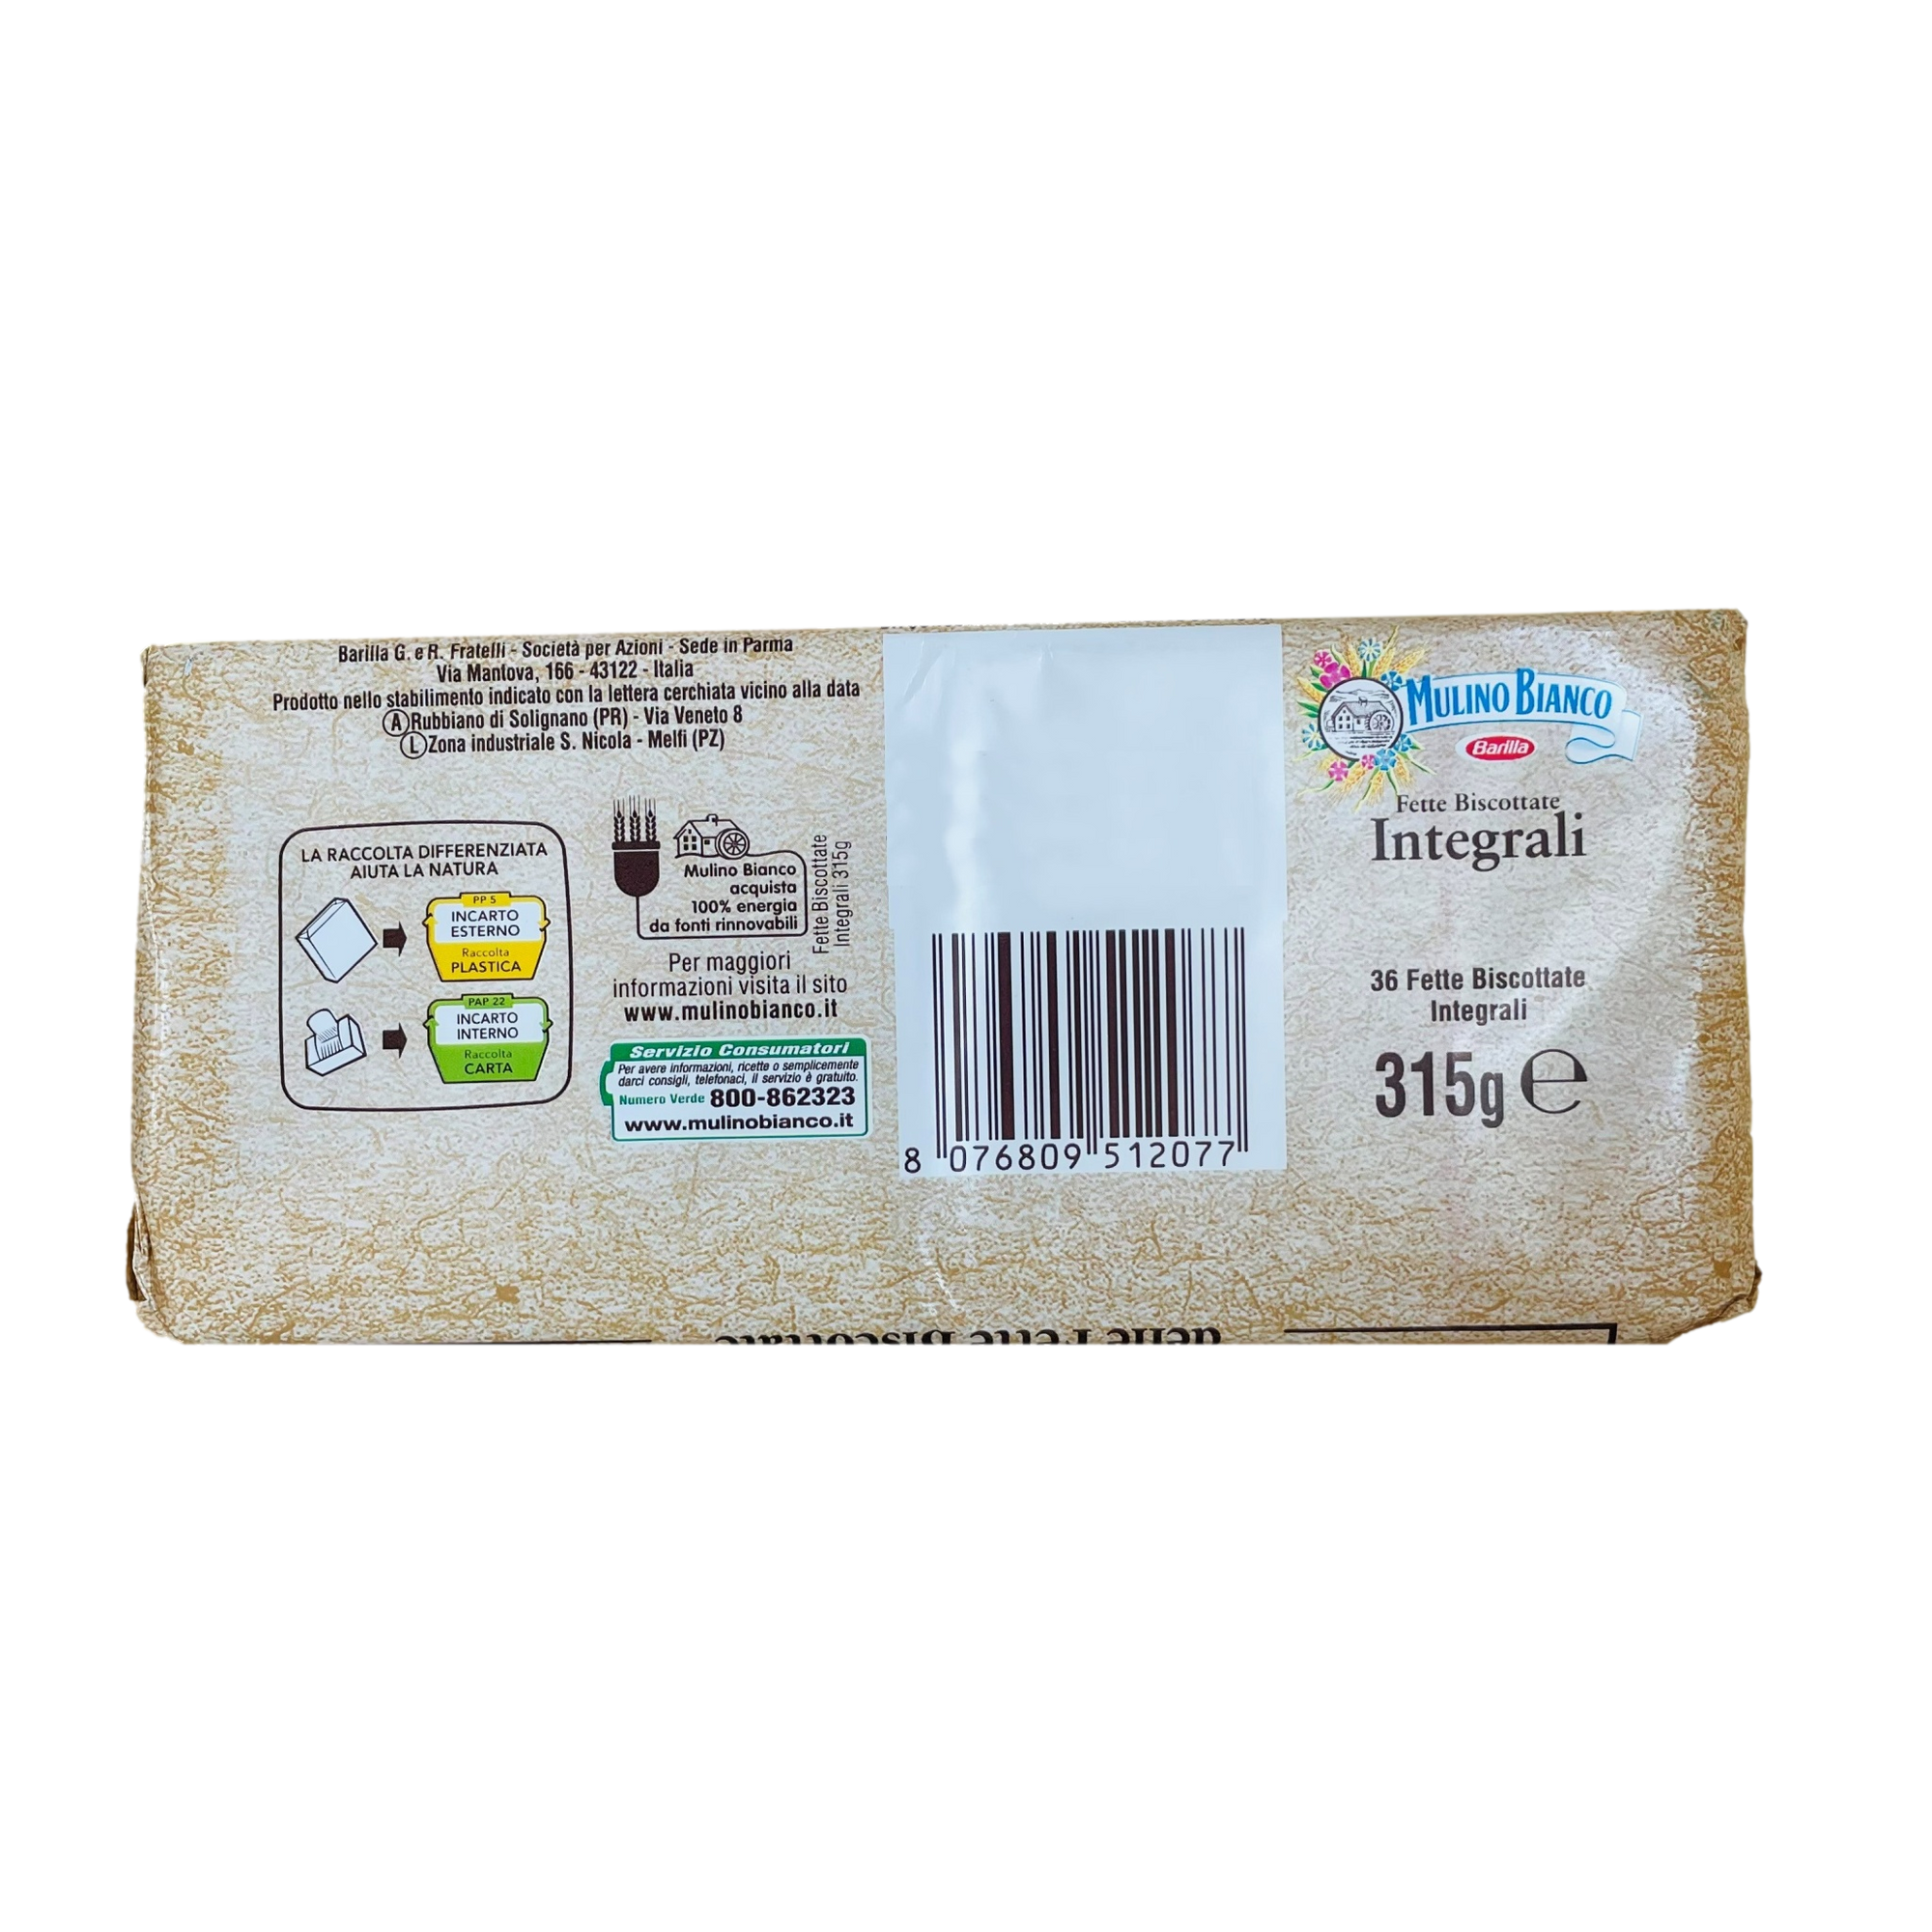 Mulino Bianco Fette Biscottate Integrali x36 - 315 gr - Consegna all'Estero